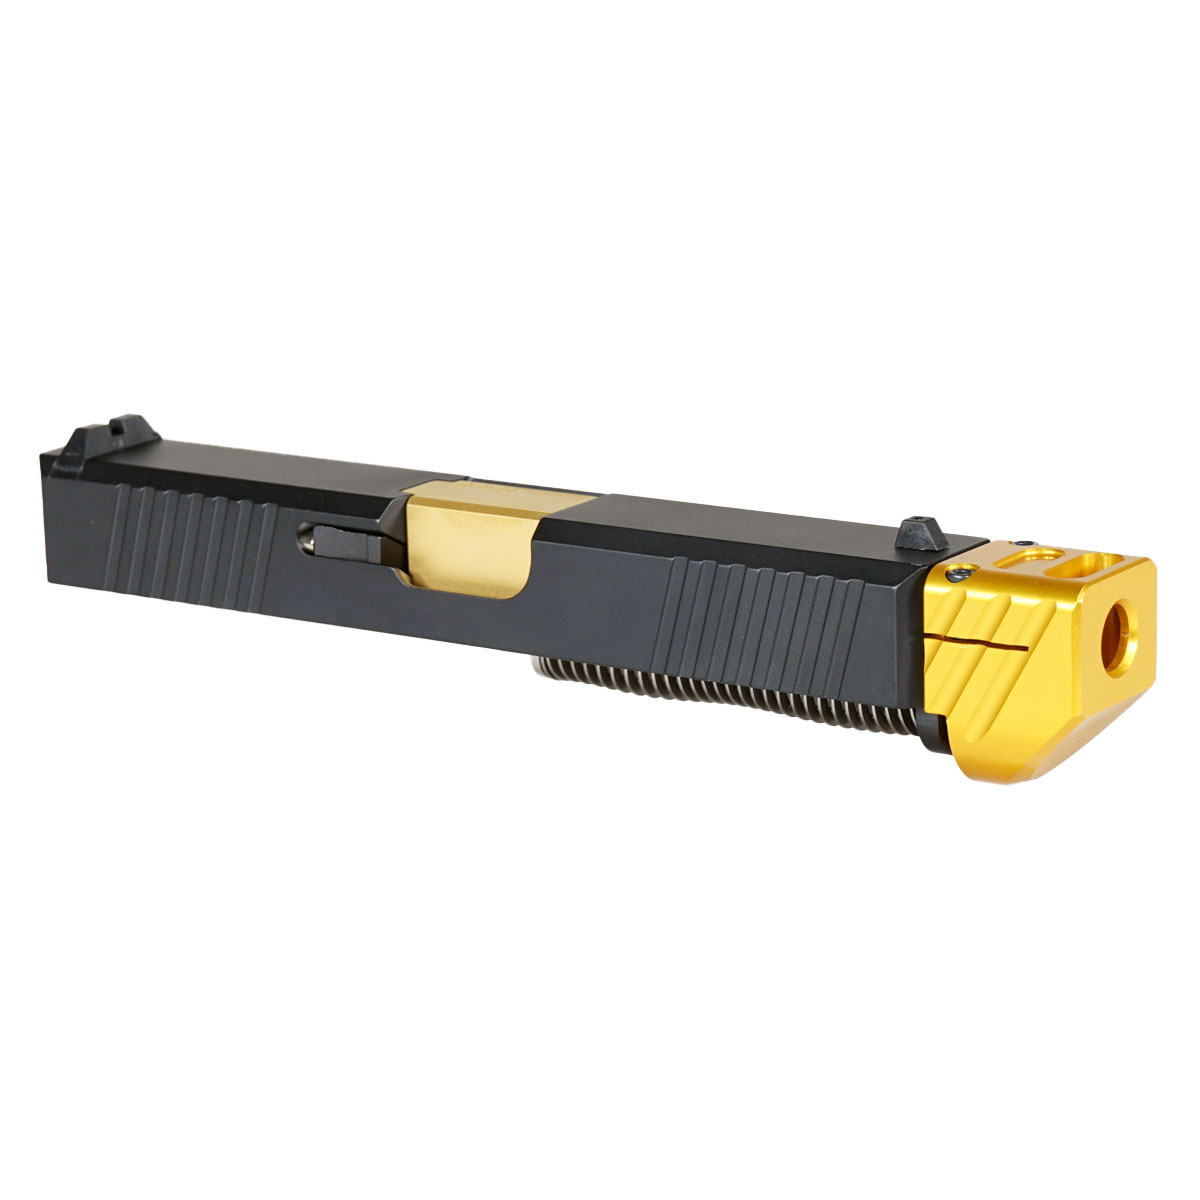 MMC 'Oakley V2 w/ Gold Compensator' 9mm Complete Slide Kit - Glock 19 Gen 1-3 Compatible